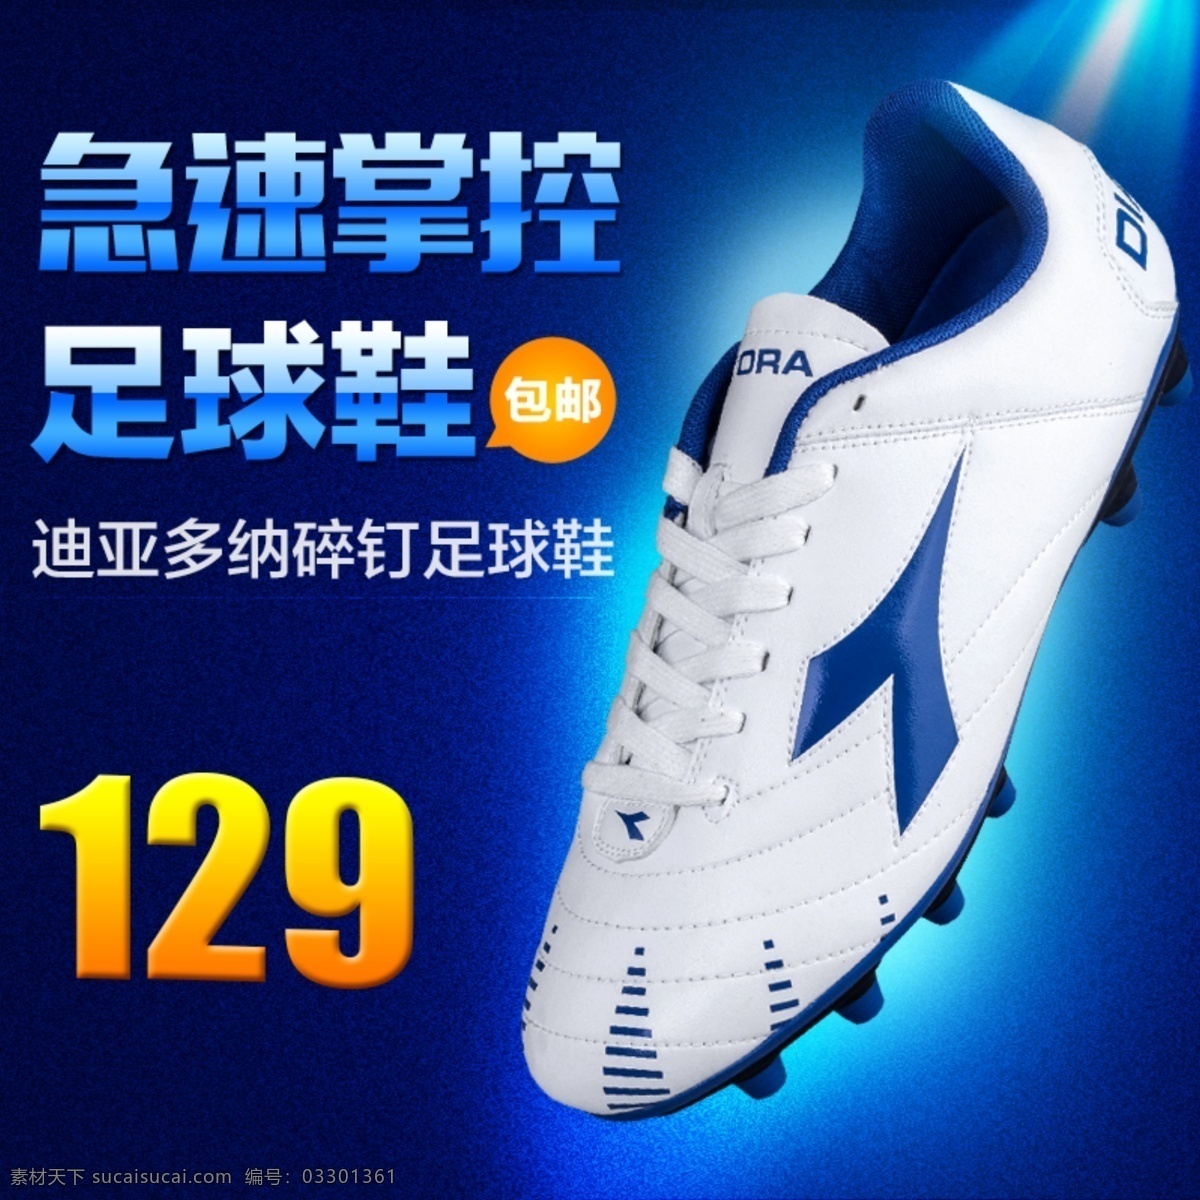 运动 足球鞋 直通车 推广 图 推广图 跑步鞋 蓝色